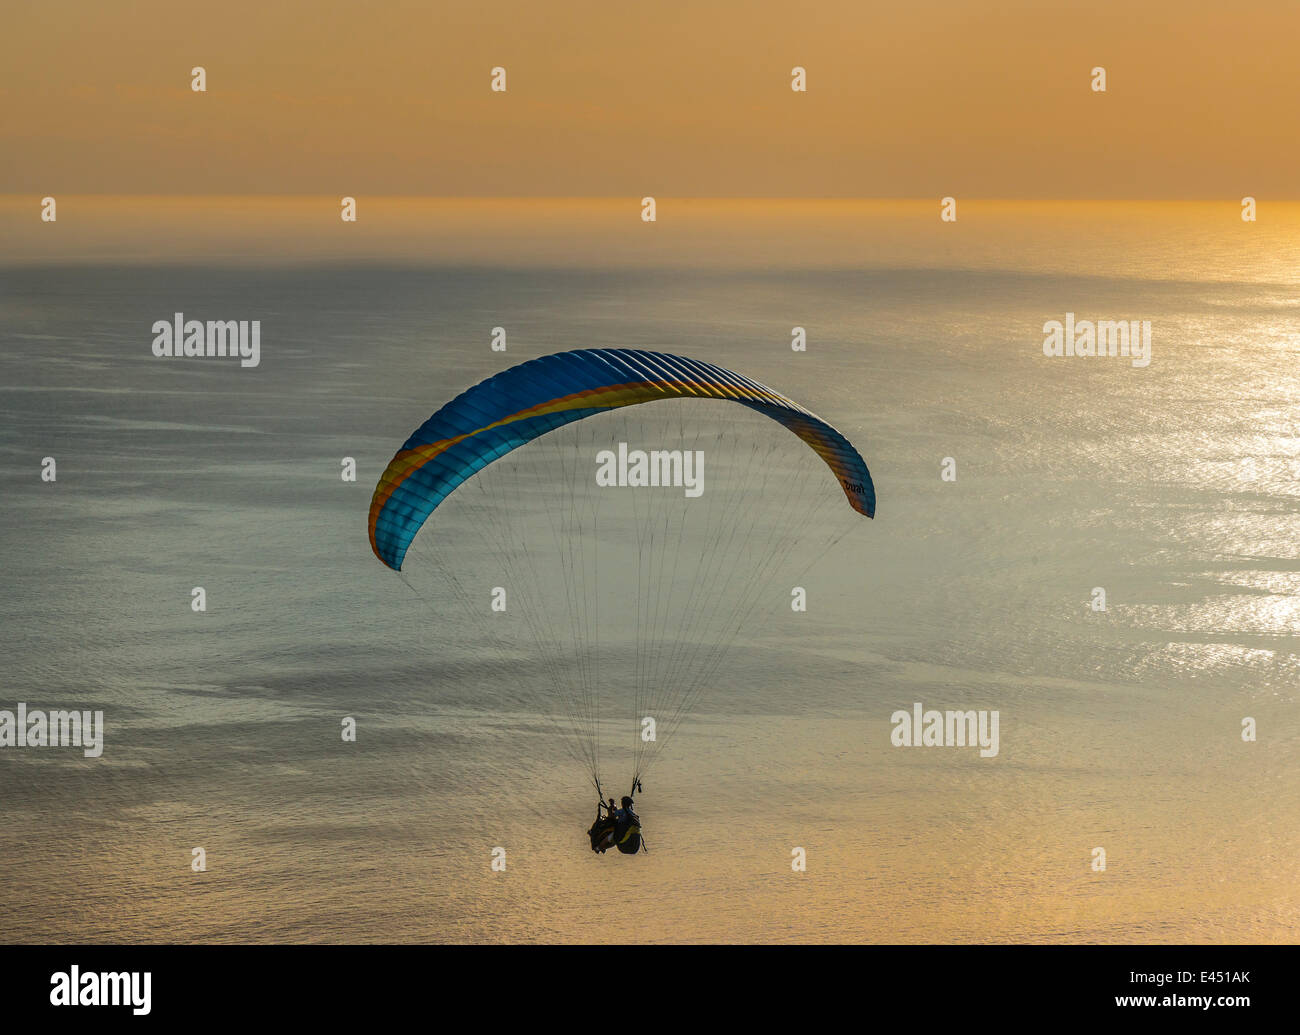 Le saut en tandem en parapente parapente, voler au-dessus de la mer au coucher du soleil, Cape Town, Western Cape, Afrique du Sud Banque D'Images